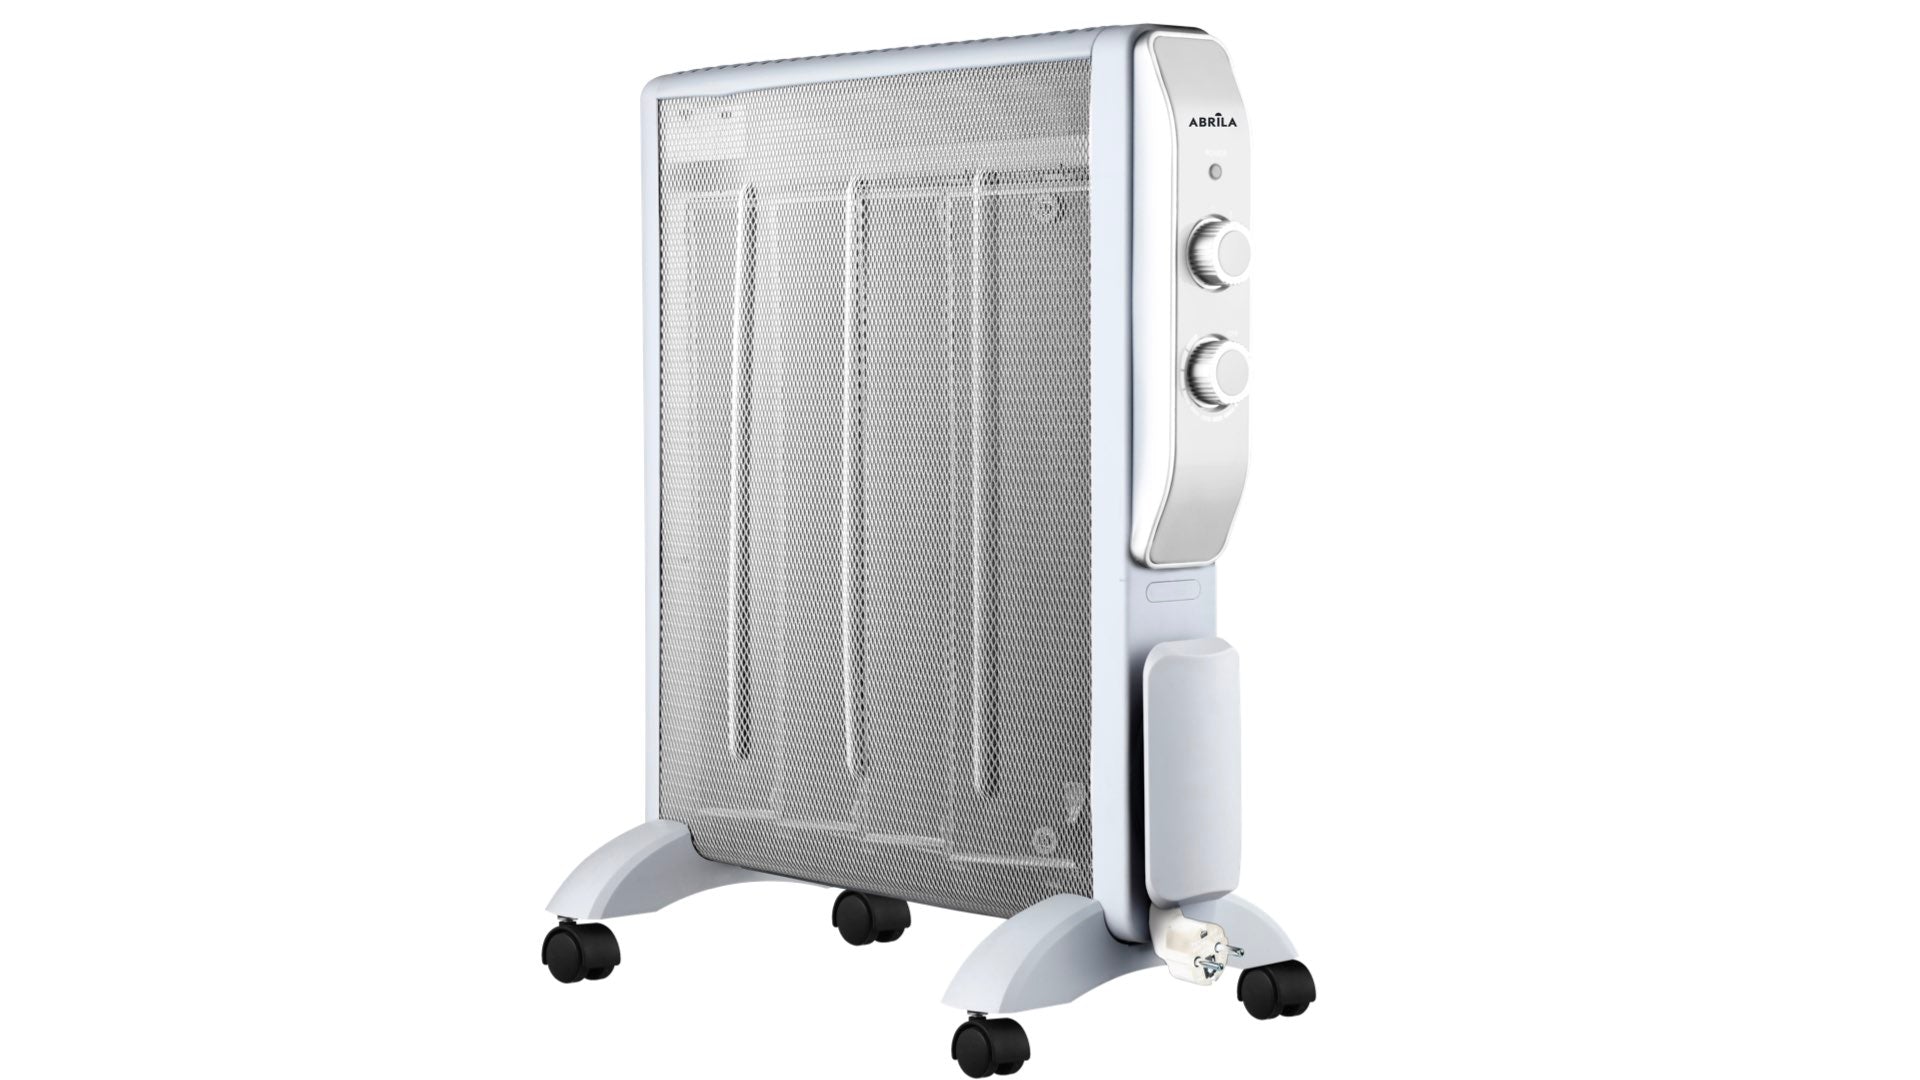 Comprar radiadores de mica para climatizar viviendas o negocios